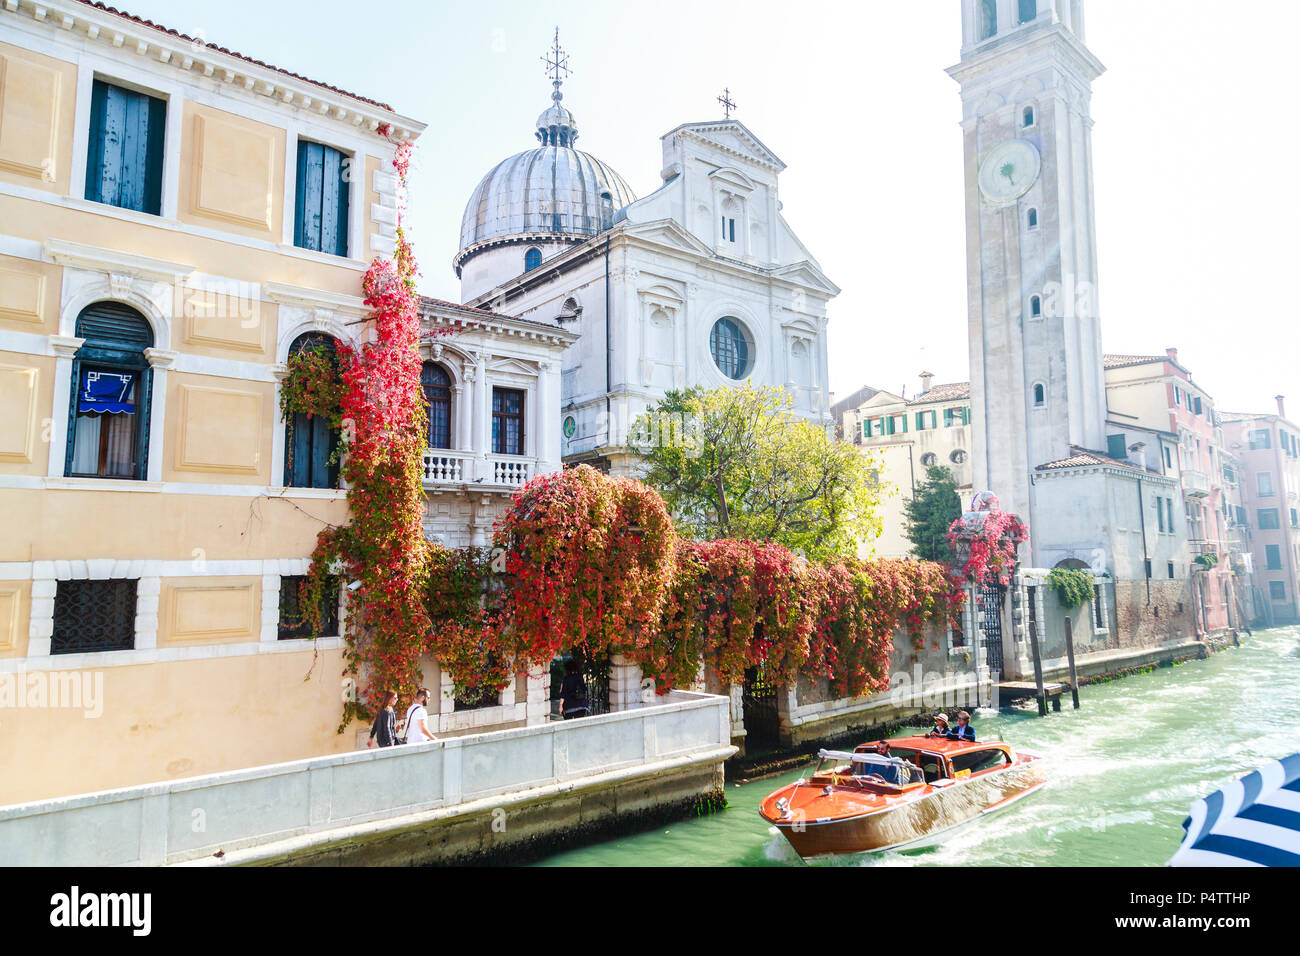 Klassische Motorboot mit zwei ständigen Touristen und Geschäftsreisende, die Chiesa San Giorgio (Griechische Kirche) am Rio del Greci im hellen Sonnenschein und Farben, Venedig, Italien. Stockfoto